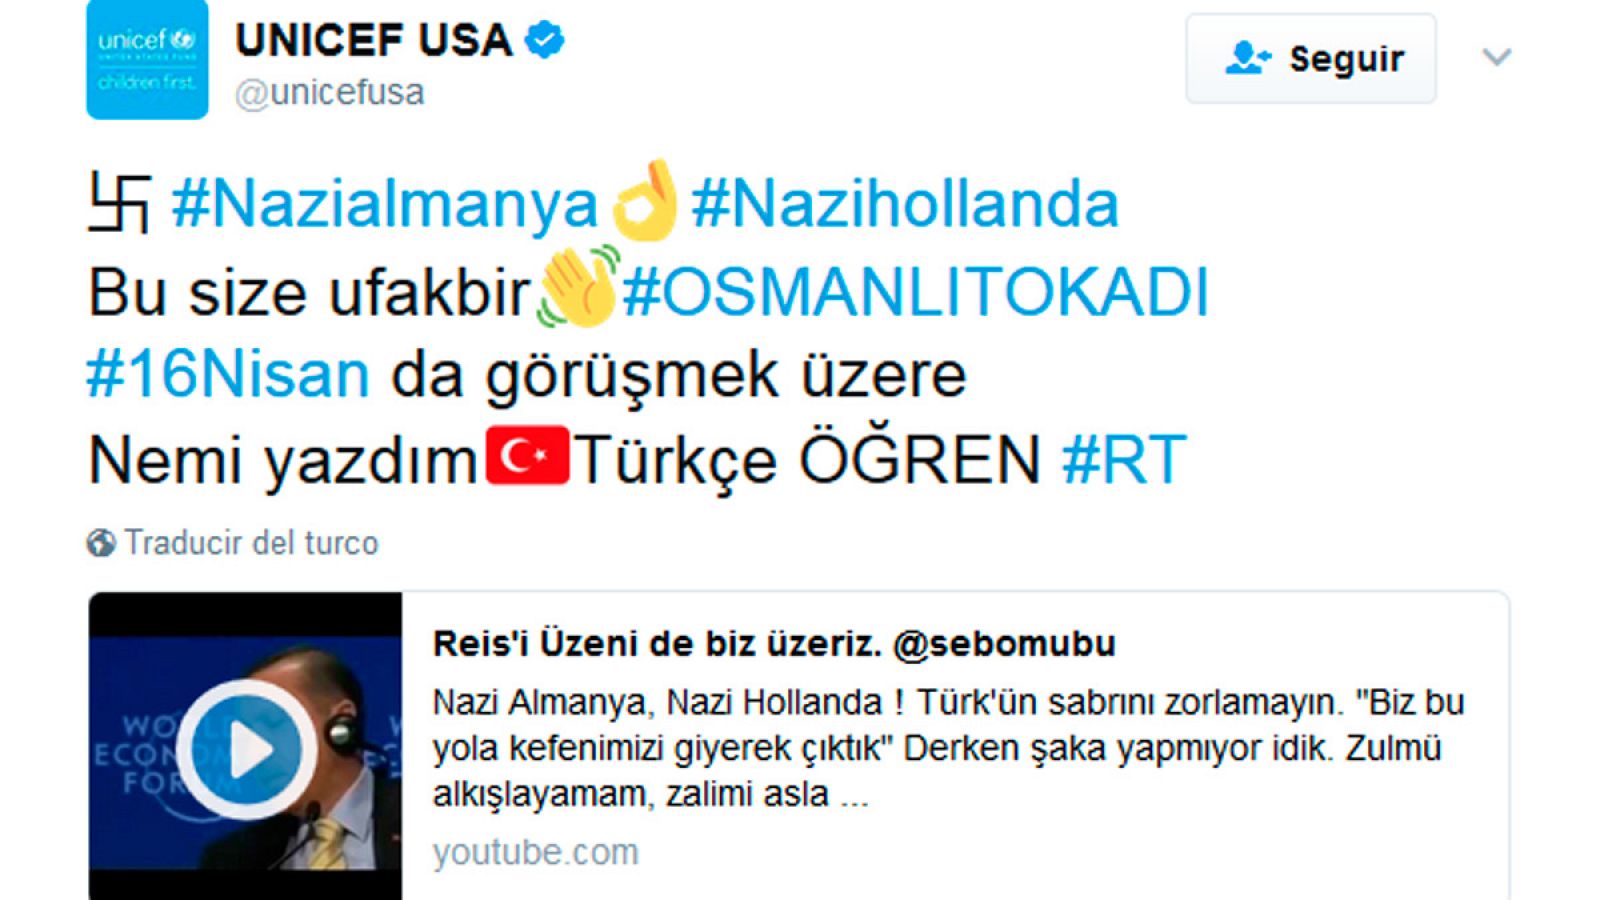 Imagen de la cuenta de UNICEF hackeada con un mensaje pro Erdogan